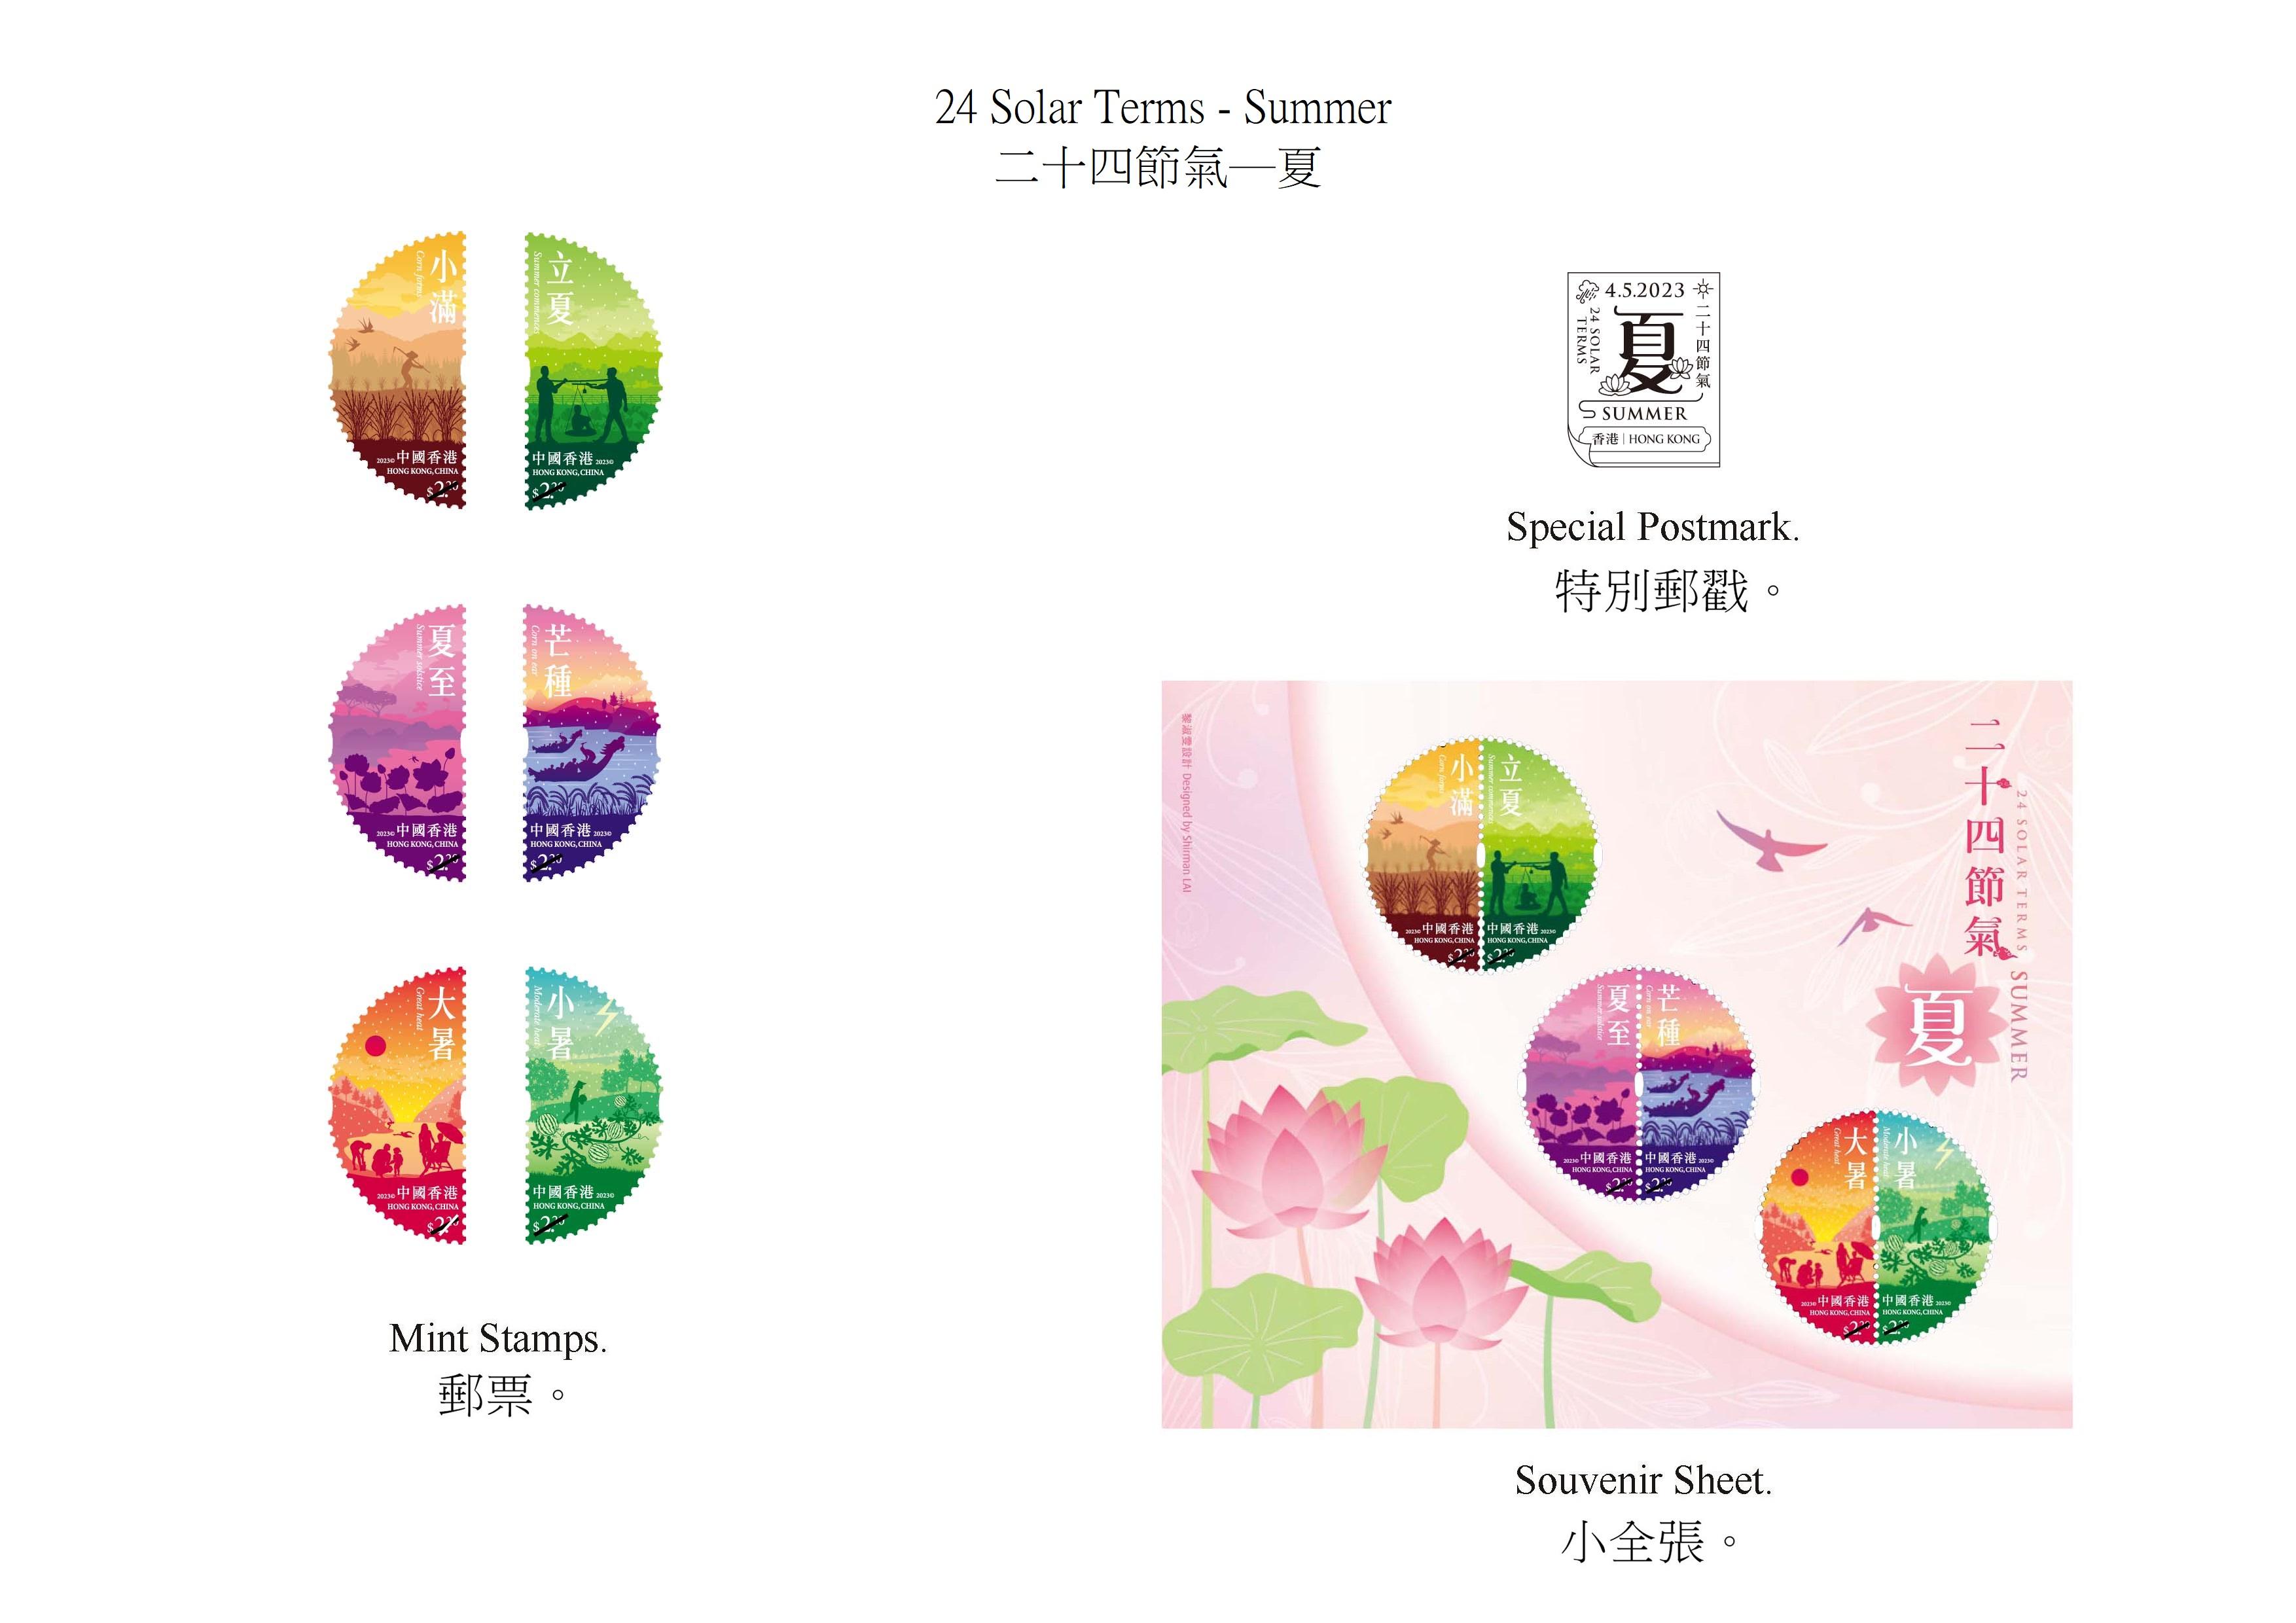 香港邮政五月四日（星期四）发行以「二十四节气──夏」为题的特别邮票及相关集邮品。图示邮票、小全张和特别邮戳。